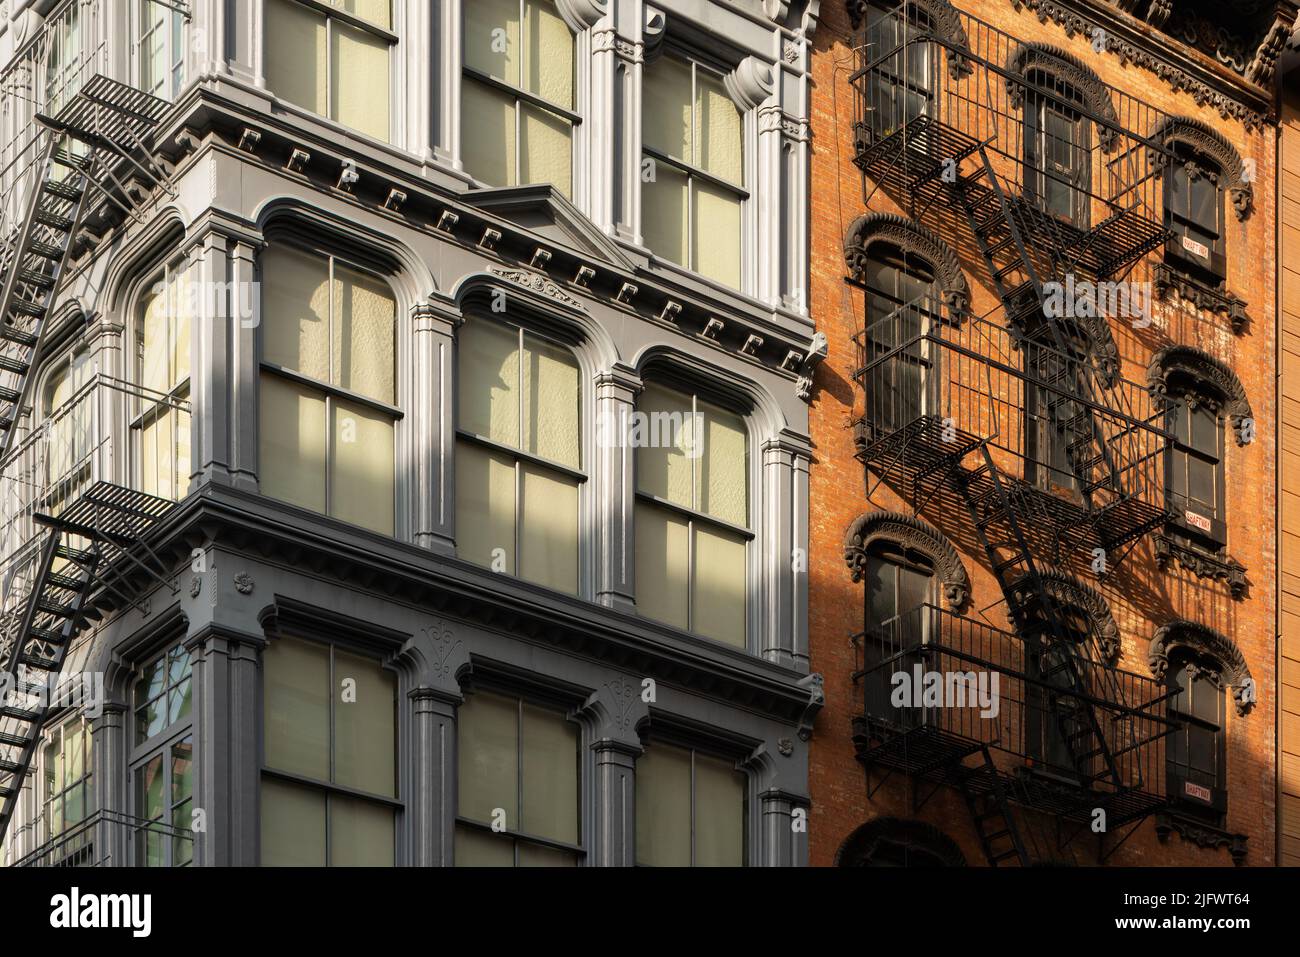 Fachadas de hierro fundido y ladrillo de los edificios de loft Soho con escape de fuego al atardecer. Soho Cast Iron Building Historic District, Manhattan, Nueva York Foto de stock